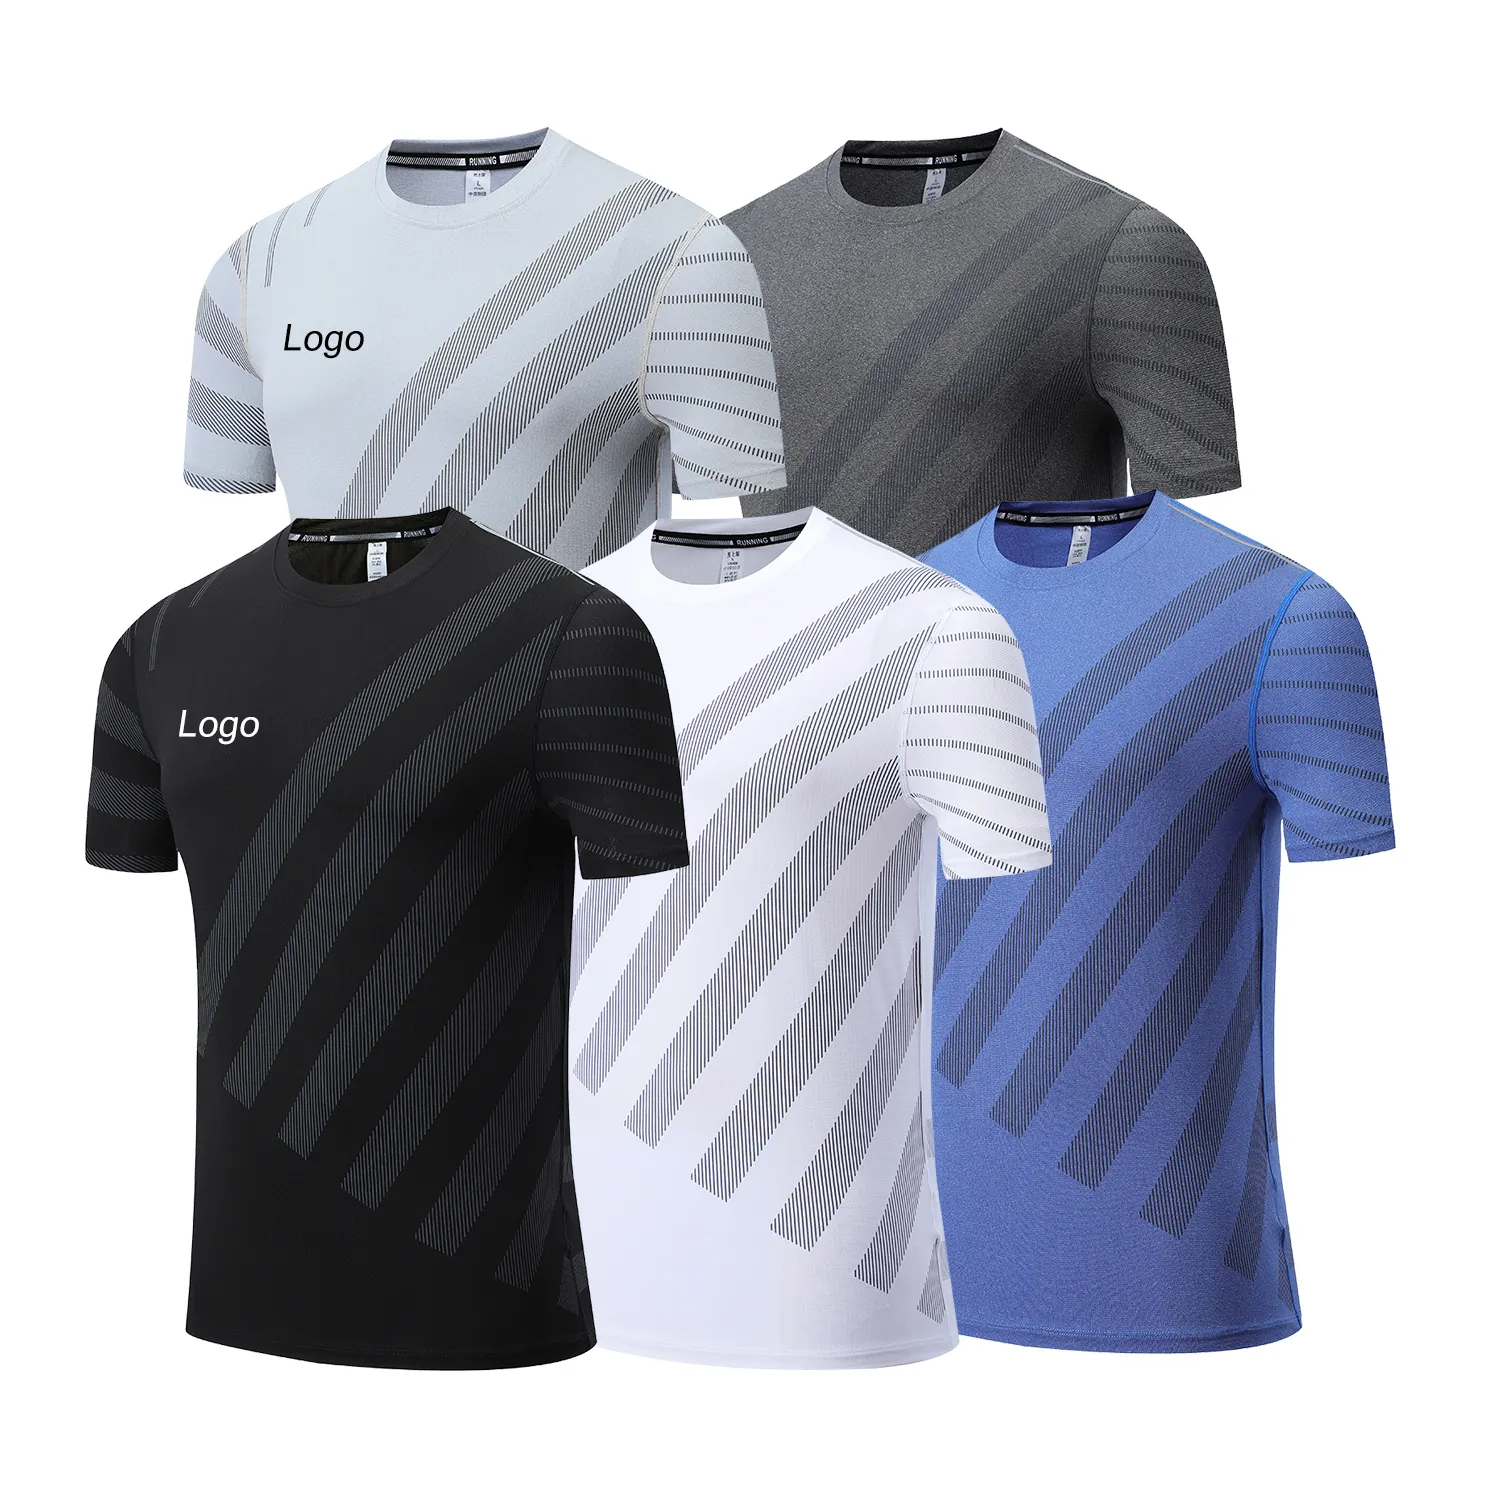 Personalizada de alta calidad de impresión de logotipo, el mejor precio de secado rápido transpirable deportes de formación de los hombres ropa